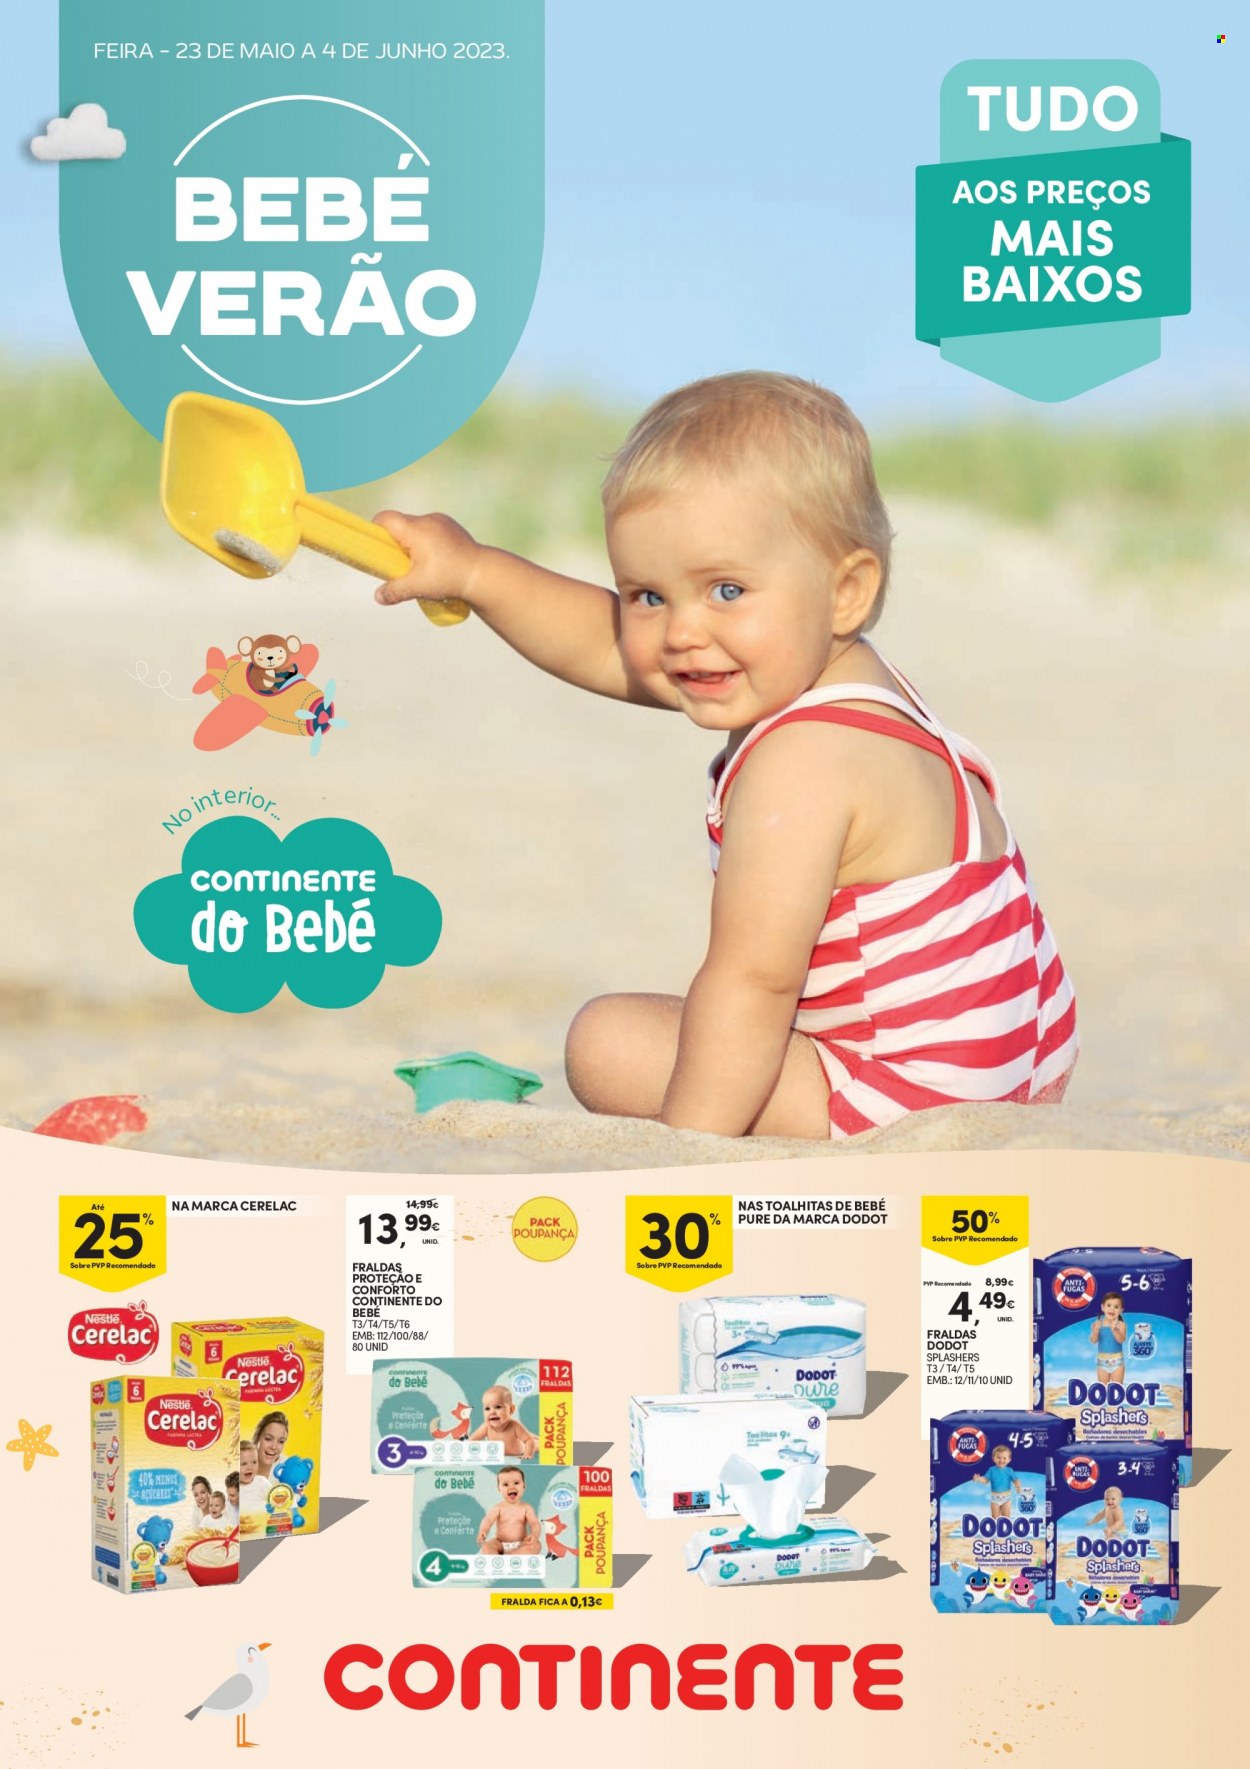 thumbnail - Folheto Continente - 23.5.2023 - 4.6.2023 - Produtos em promoção - Nestlé, toalha umedecida, Dodot, fraldas. Página 1.